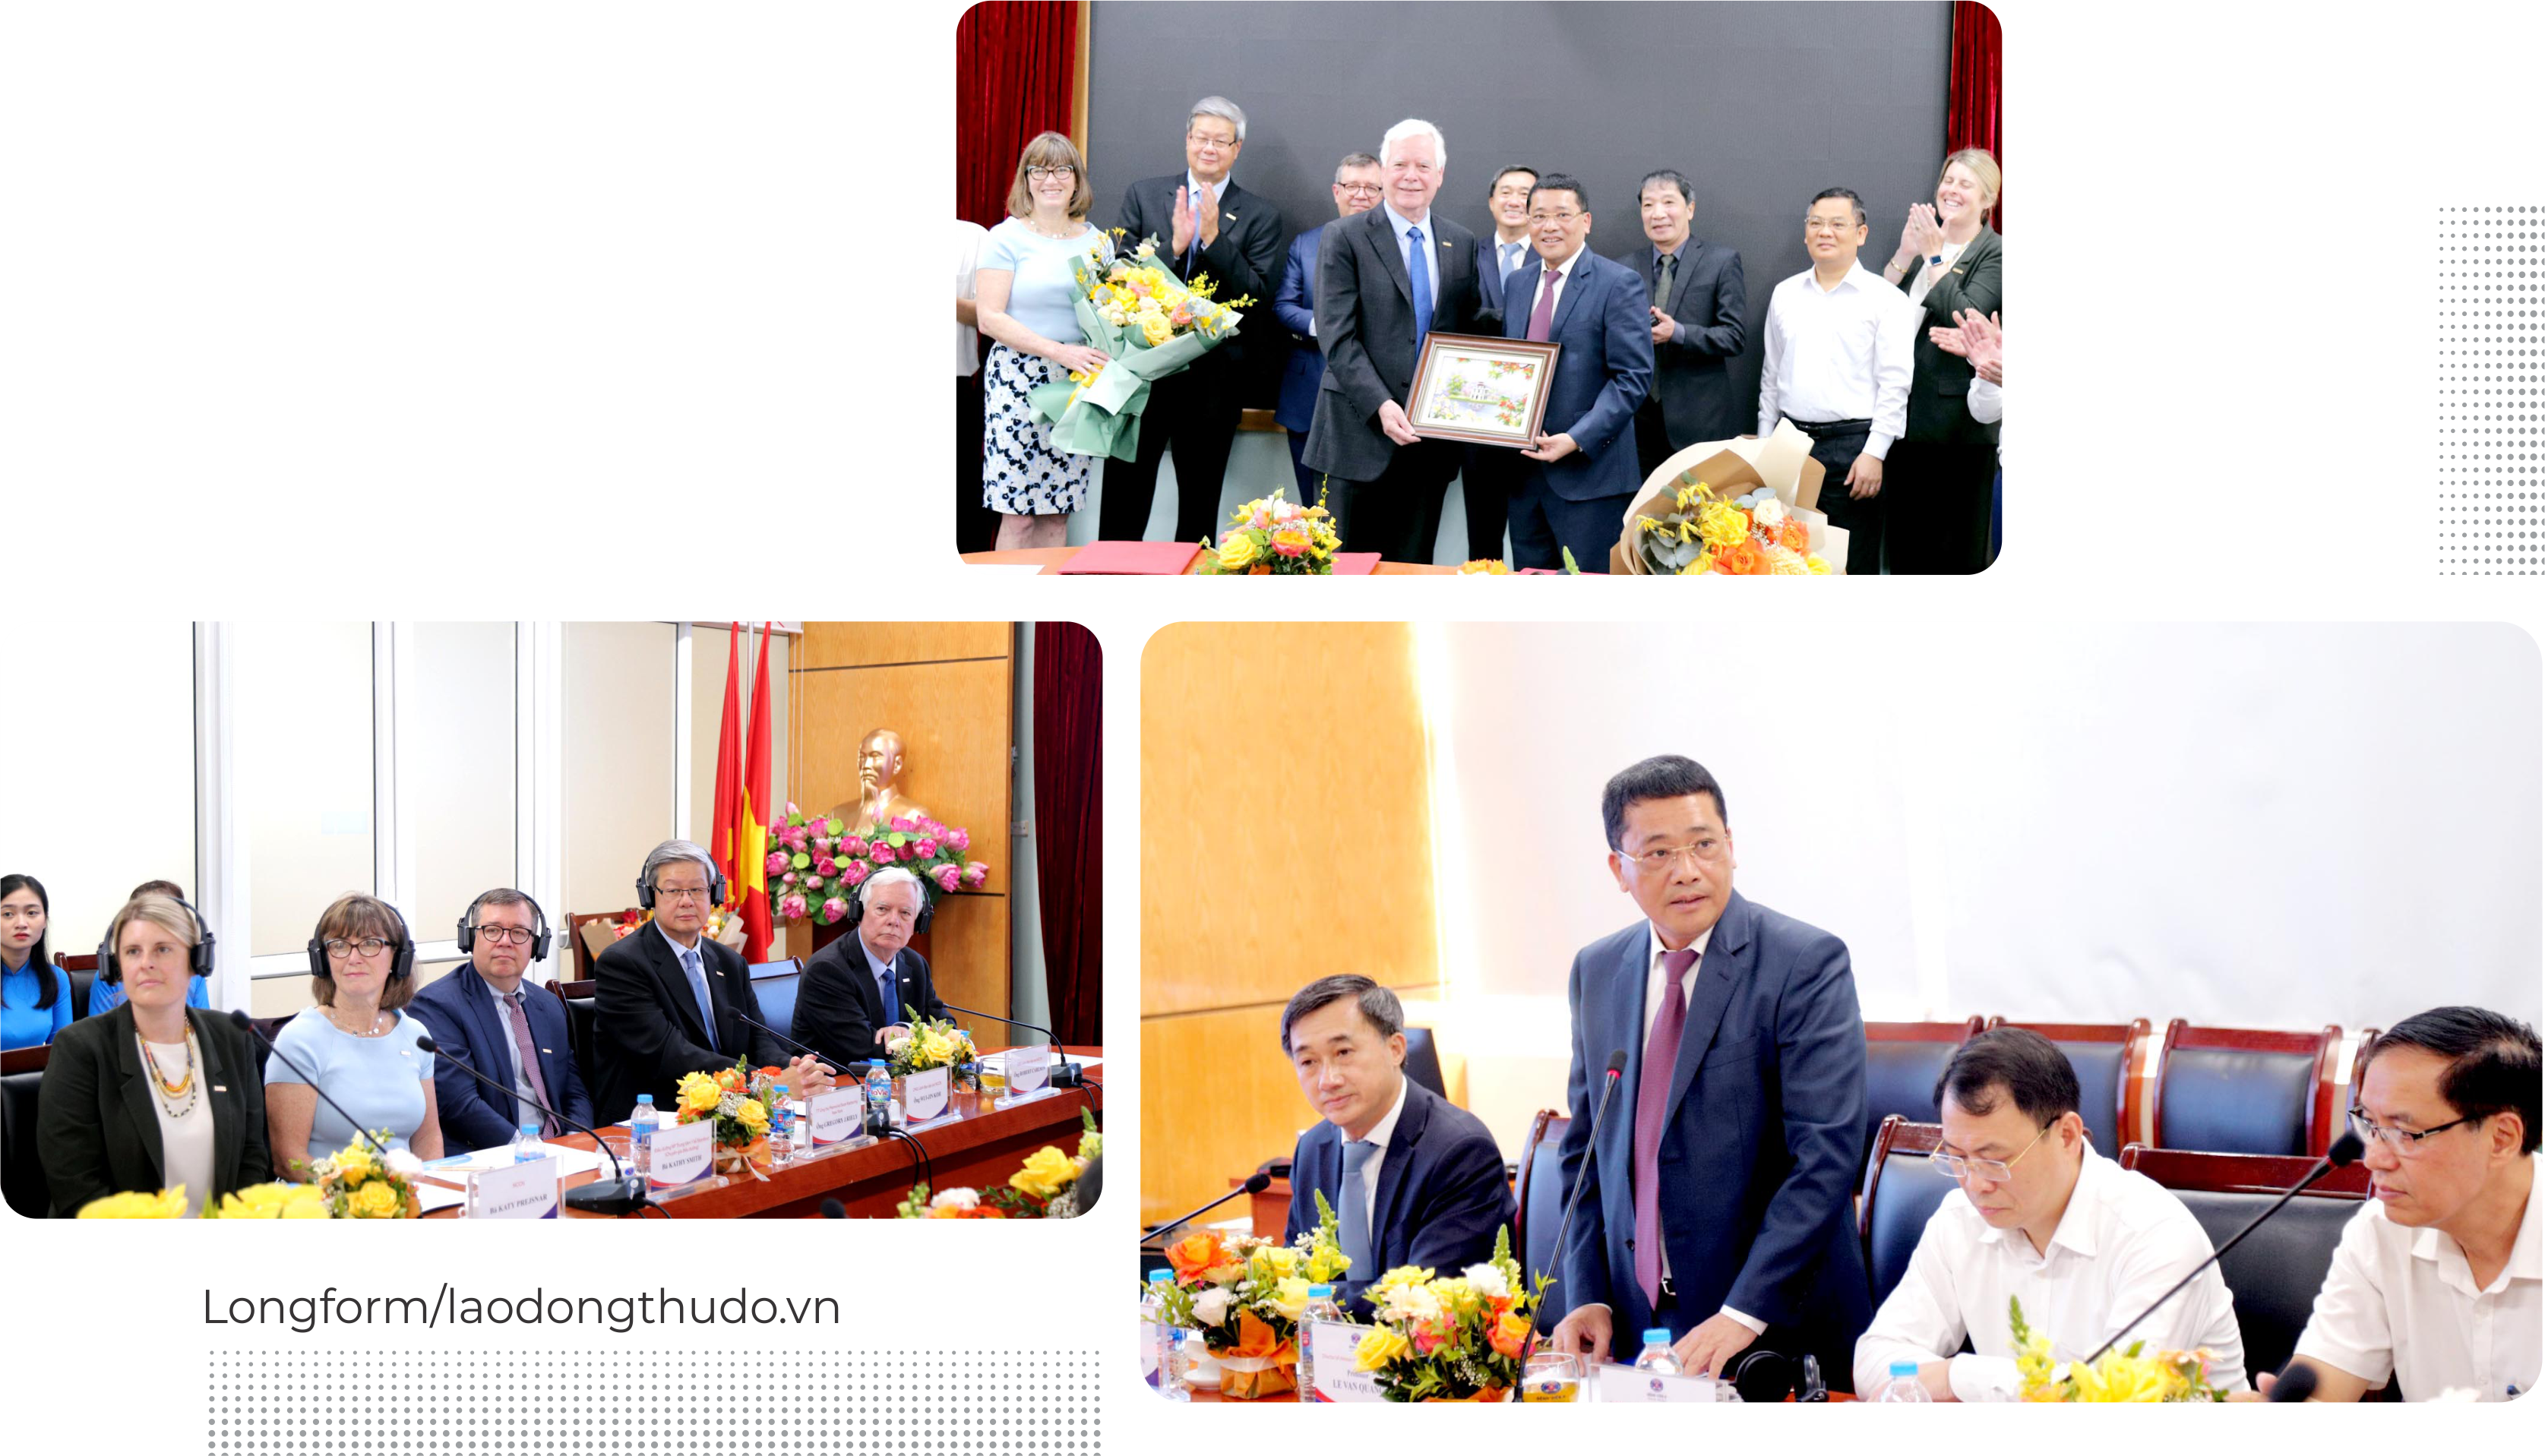 GS.TS Lê Văn Quảng: Tận tâm cống hiến vì sức khỏe nhân dân